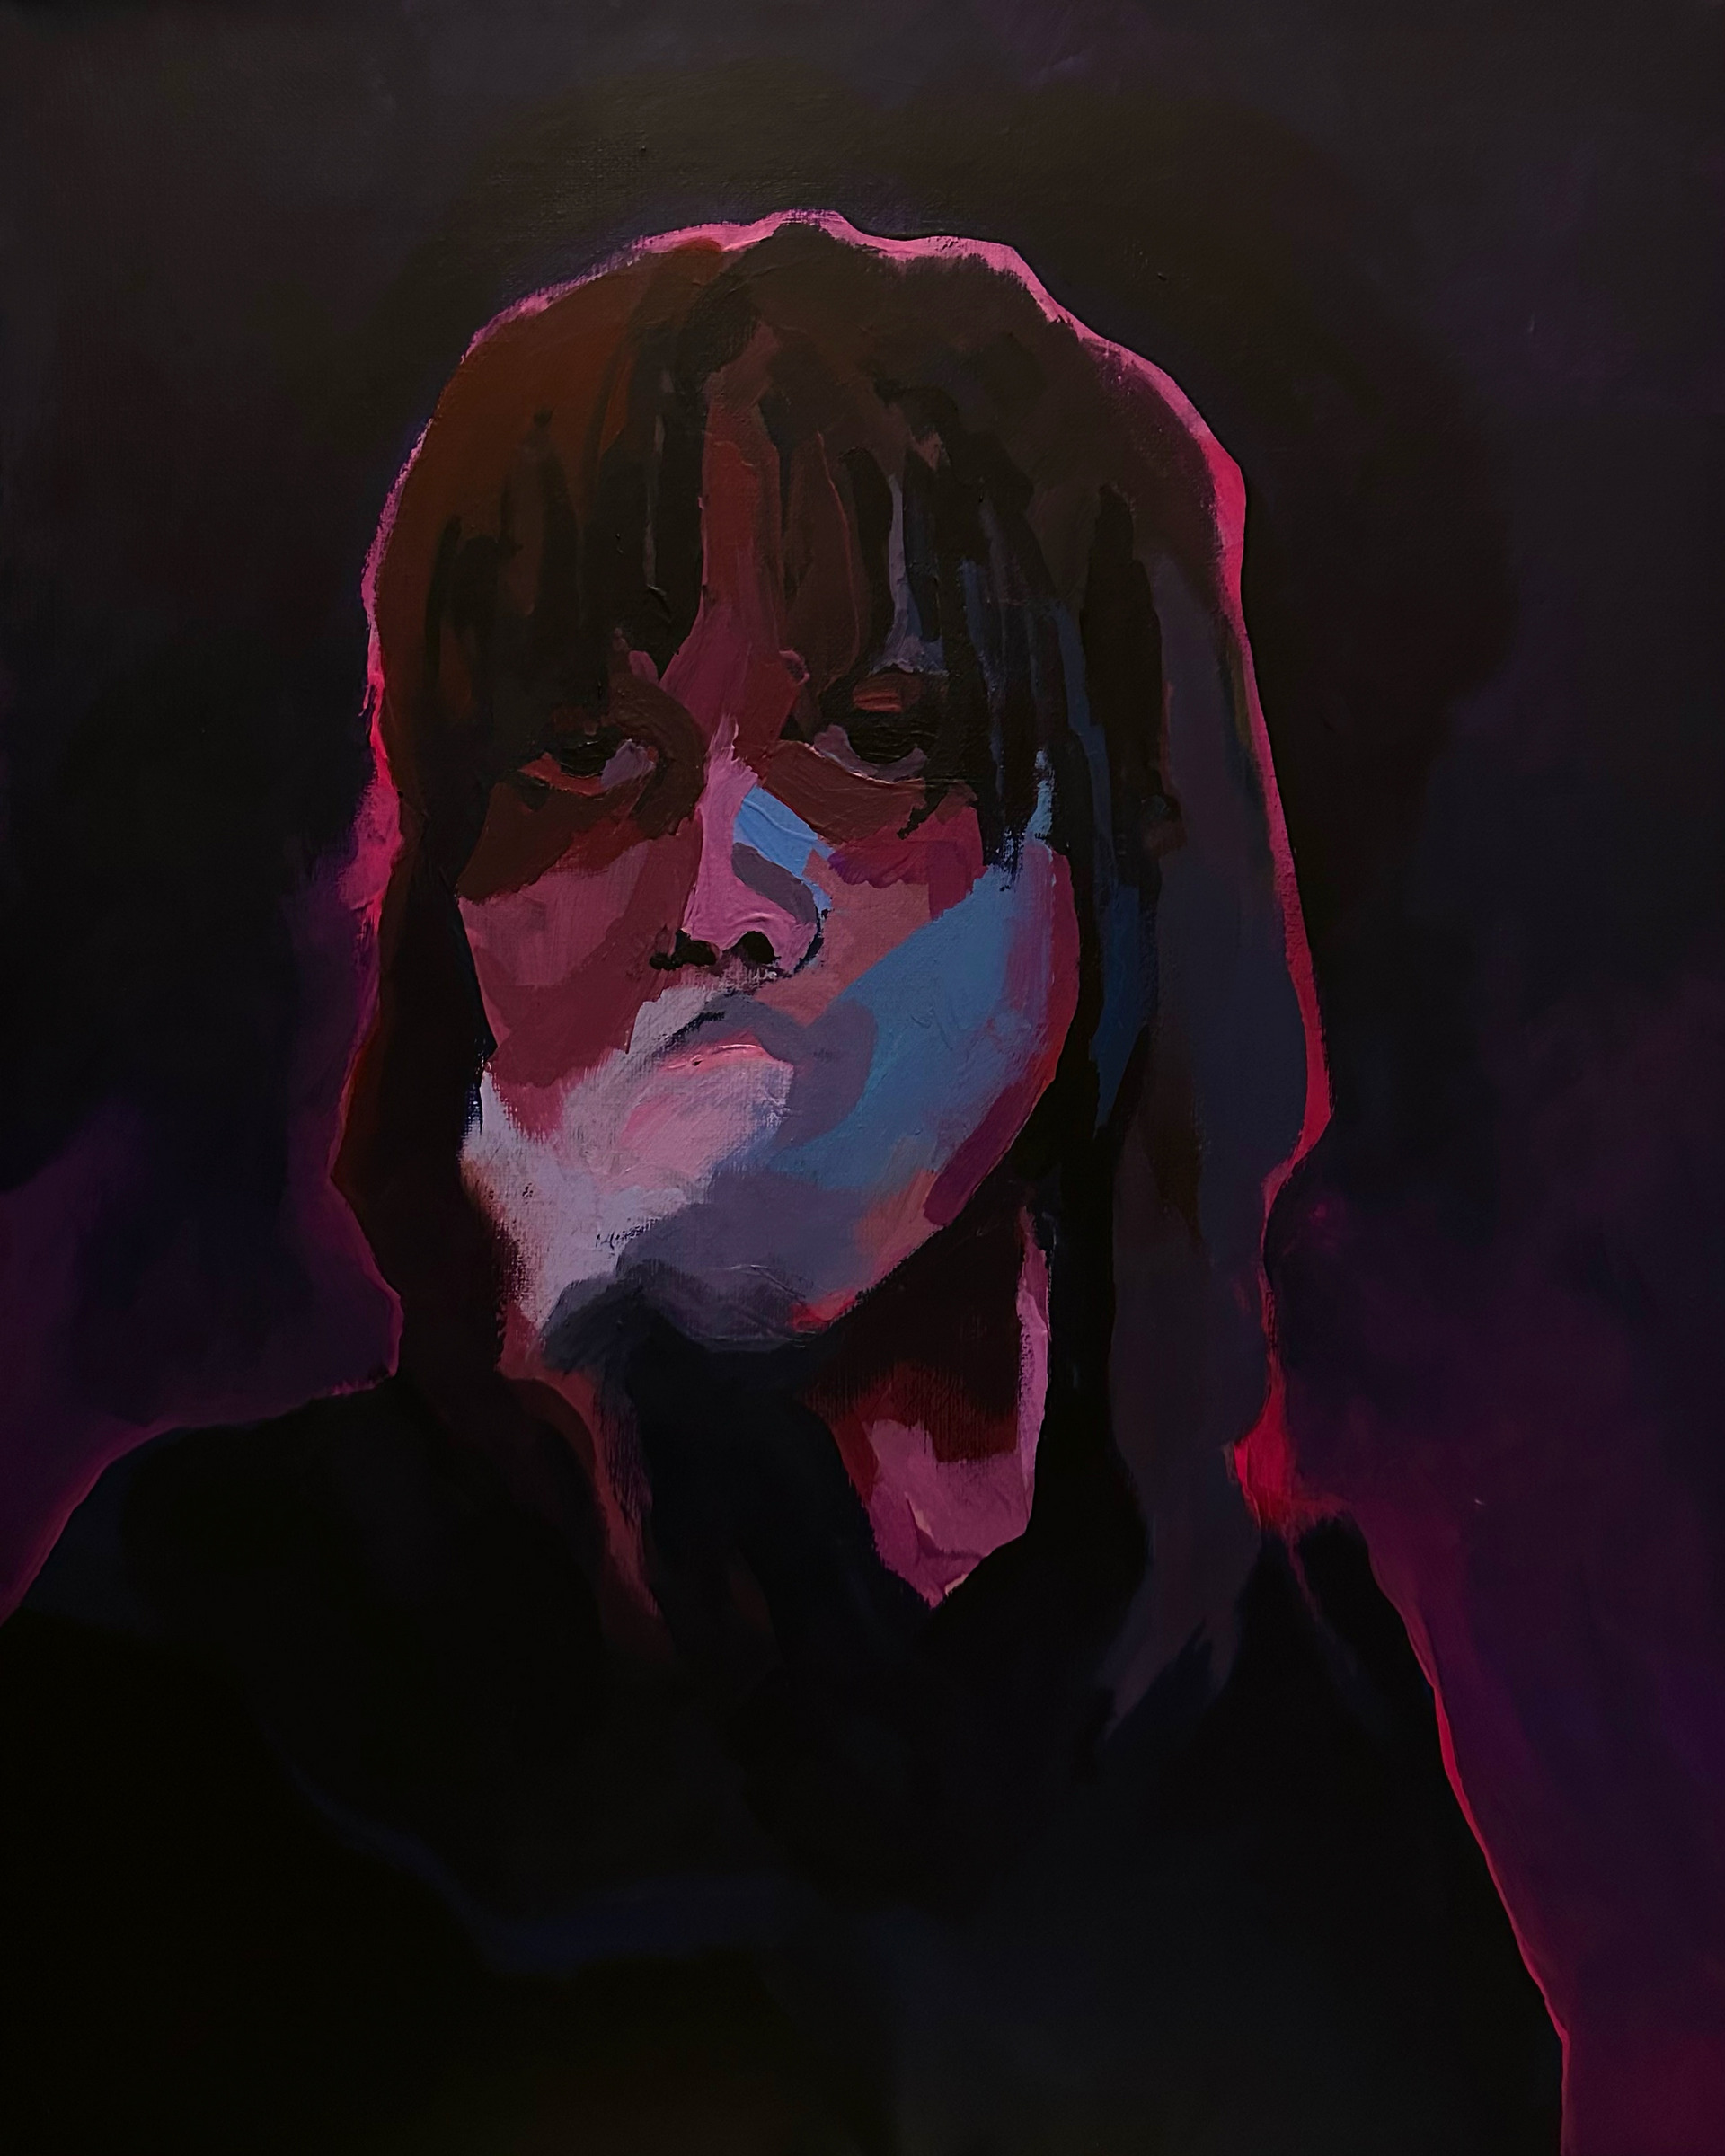 Utrzymane w tonacji ciemnego fioletu syntetyczne przedstawienie portretowe en face ciemnookiej dziewczyny wydmuchującej blady dym.